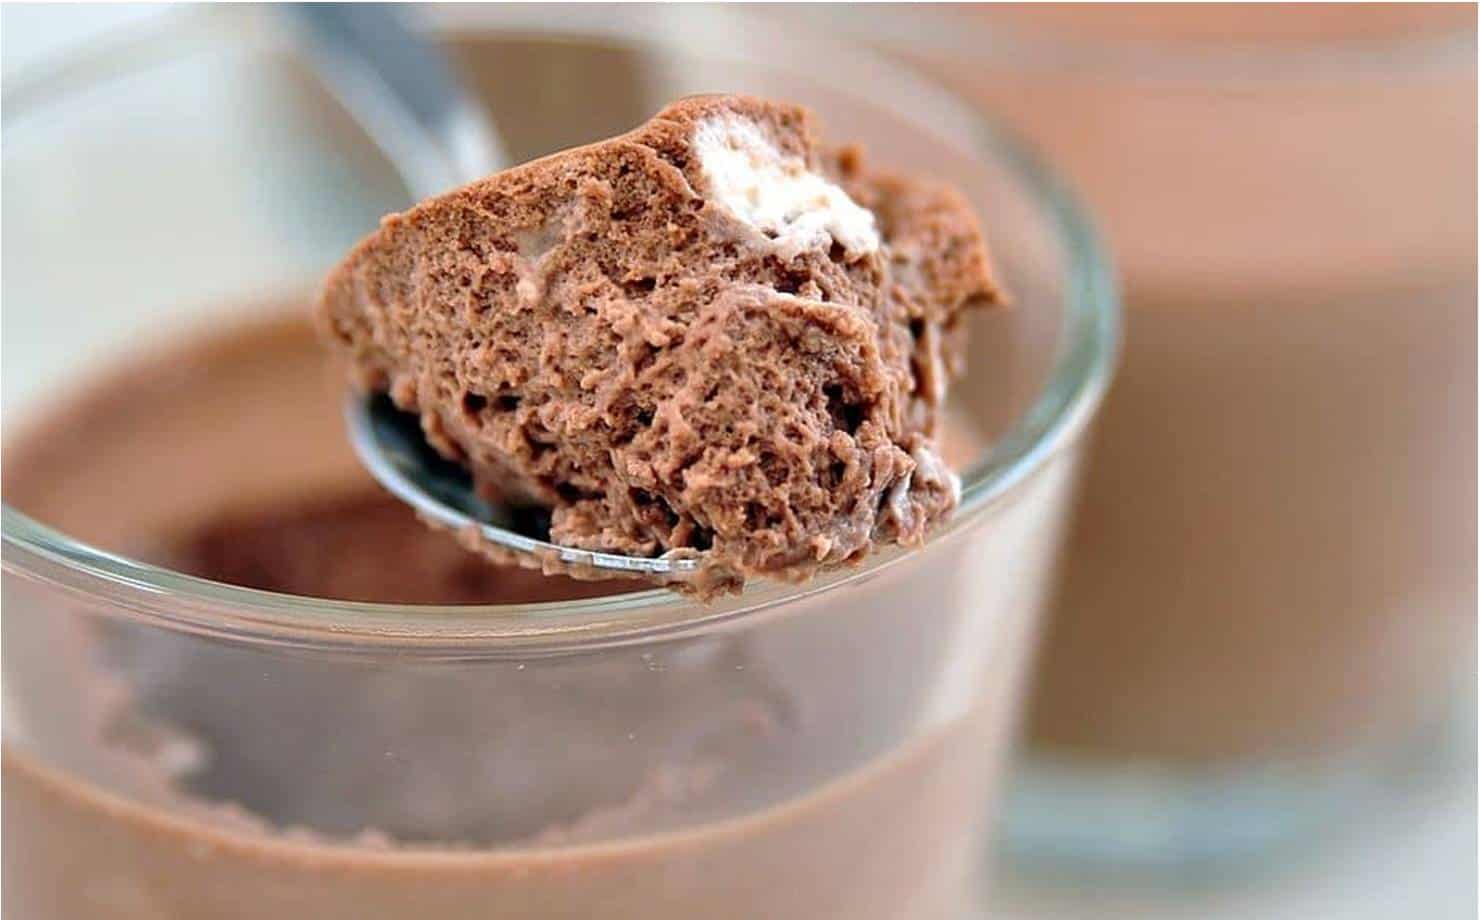 Mousse de Chocolate ao Leite de Coco: uma sobremesa deliciosa e saudável